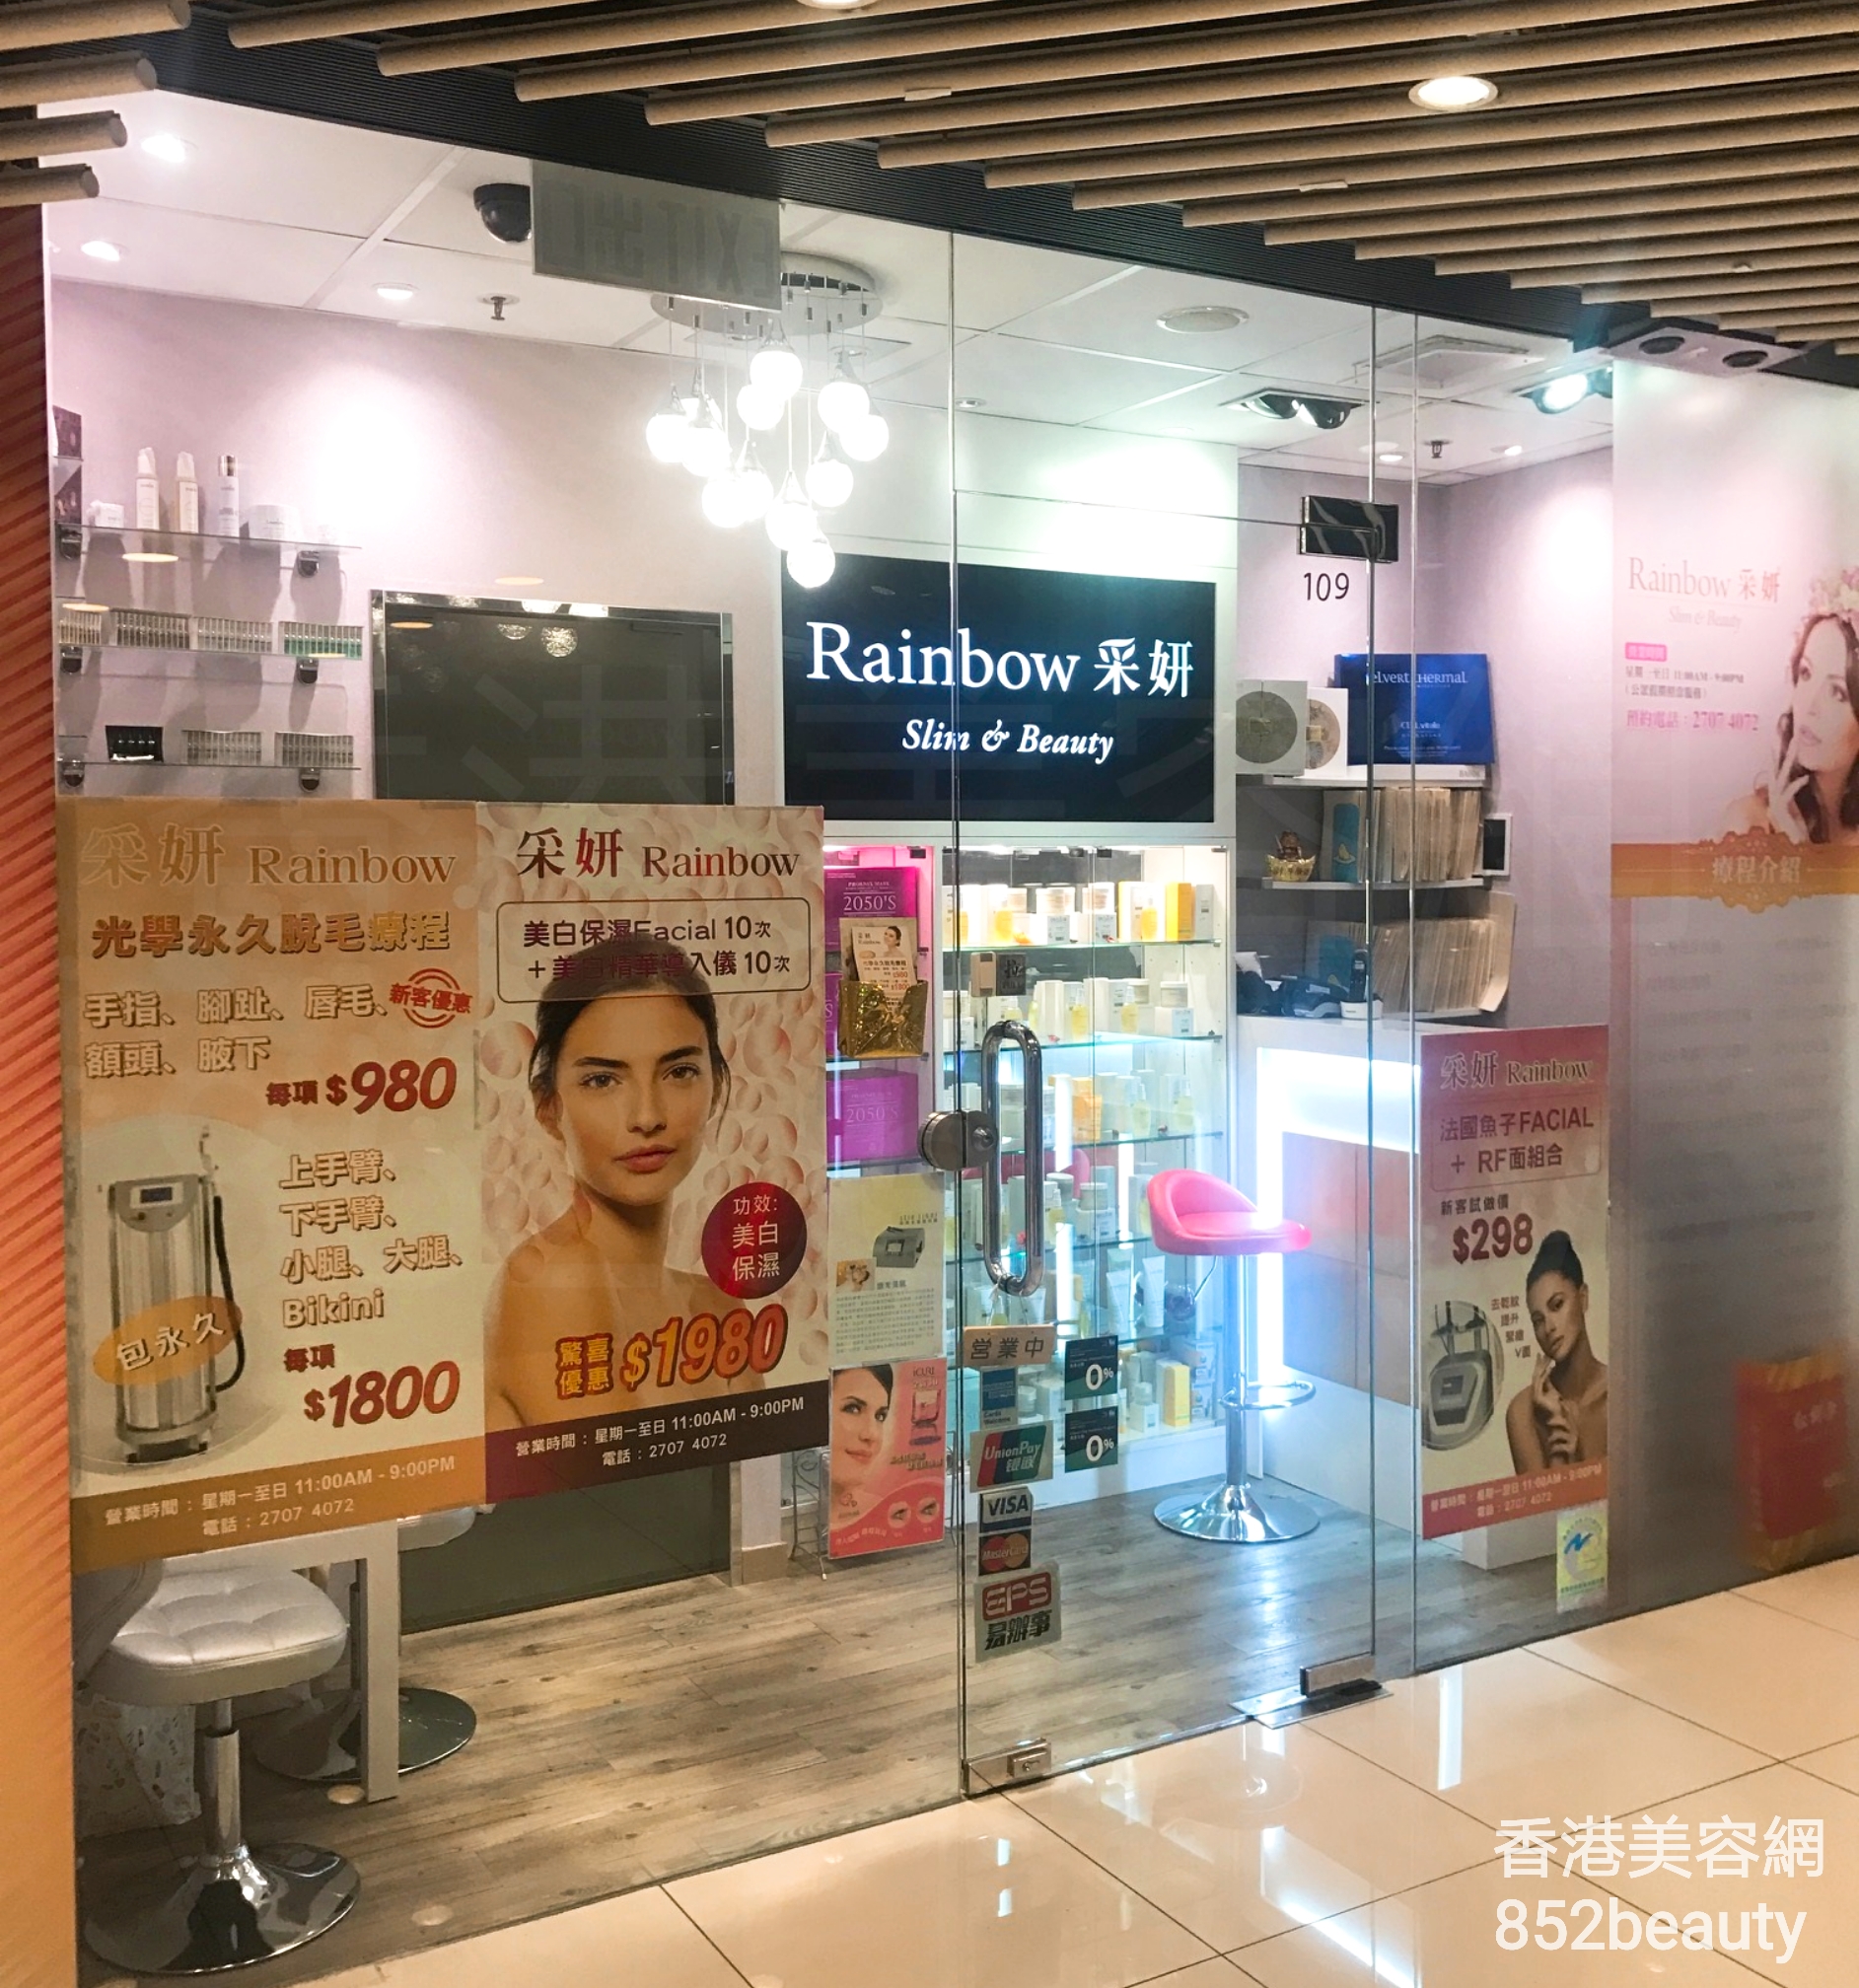 香港美容網 Hong Kong Beauty Salon 美容院 / 美容師: 采妍 Rainbow Slim & Beauty